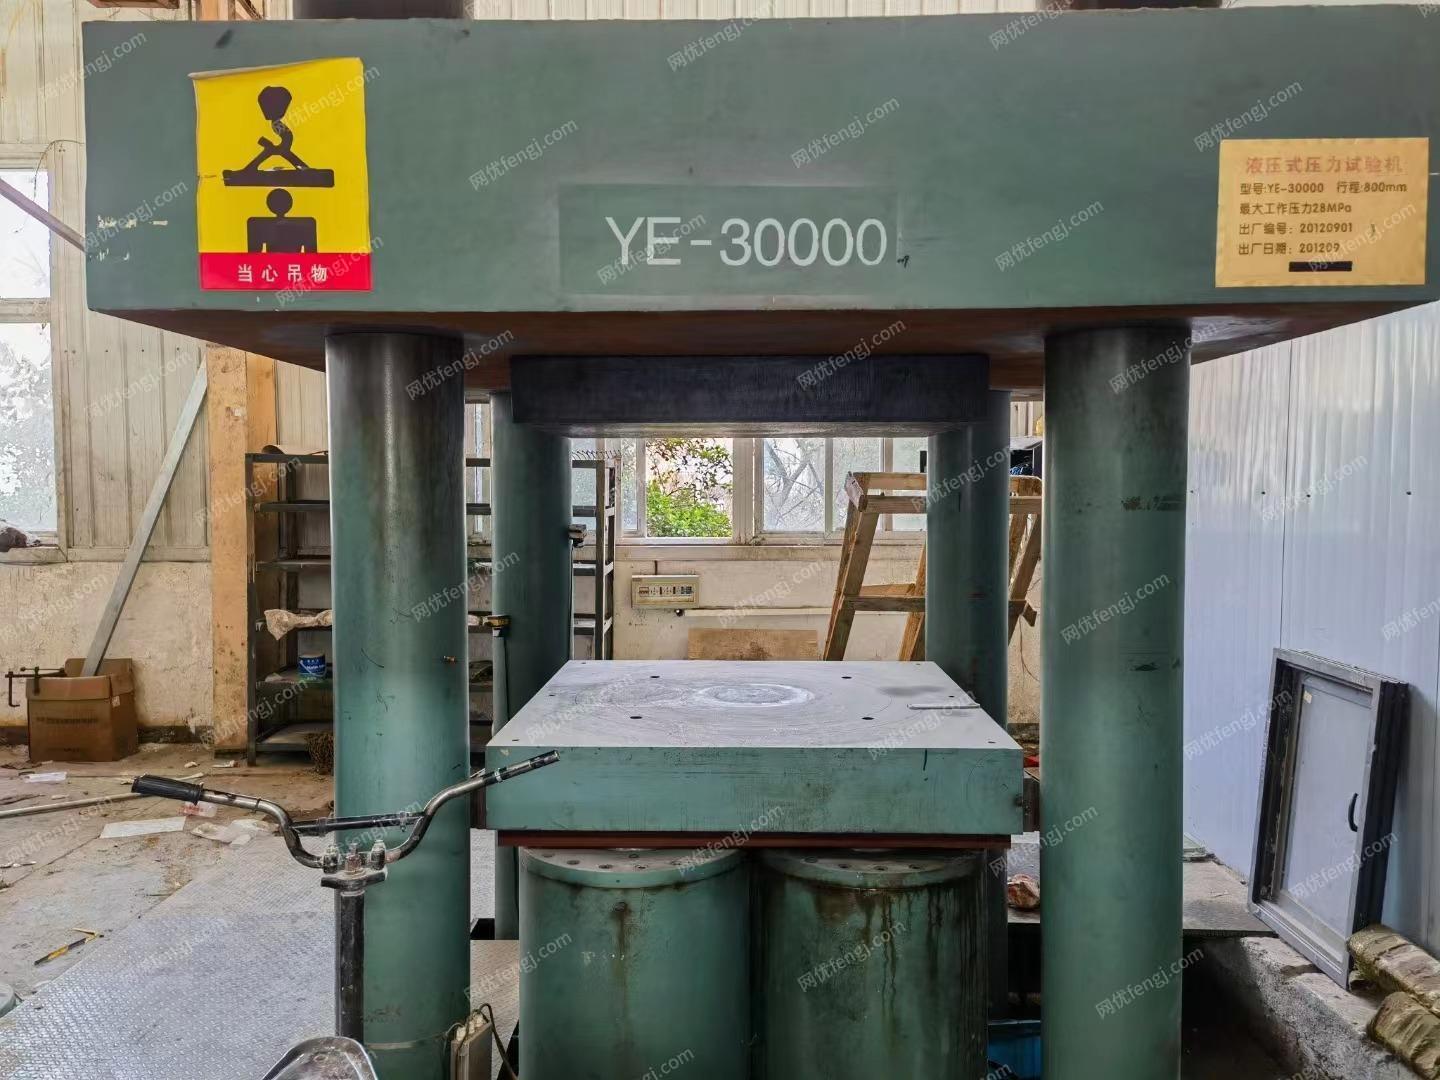 出售YE-30000液压式压力测试机